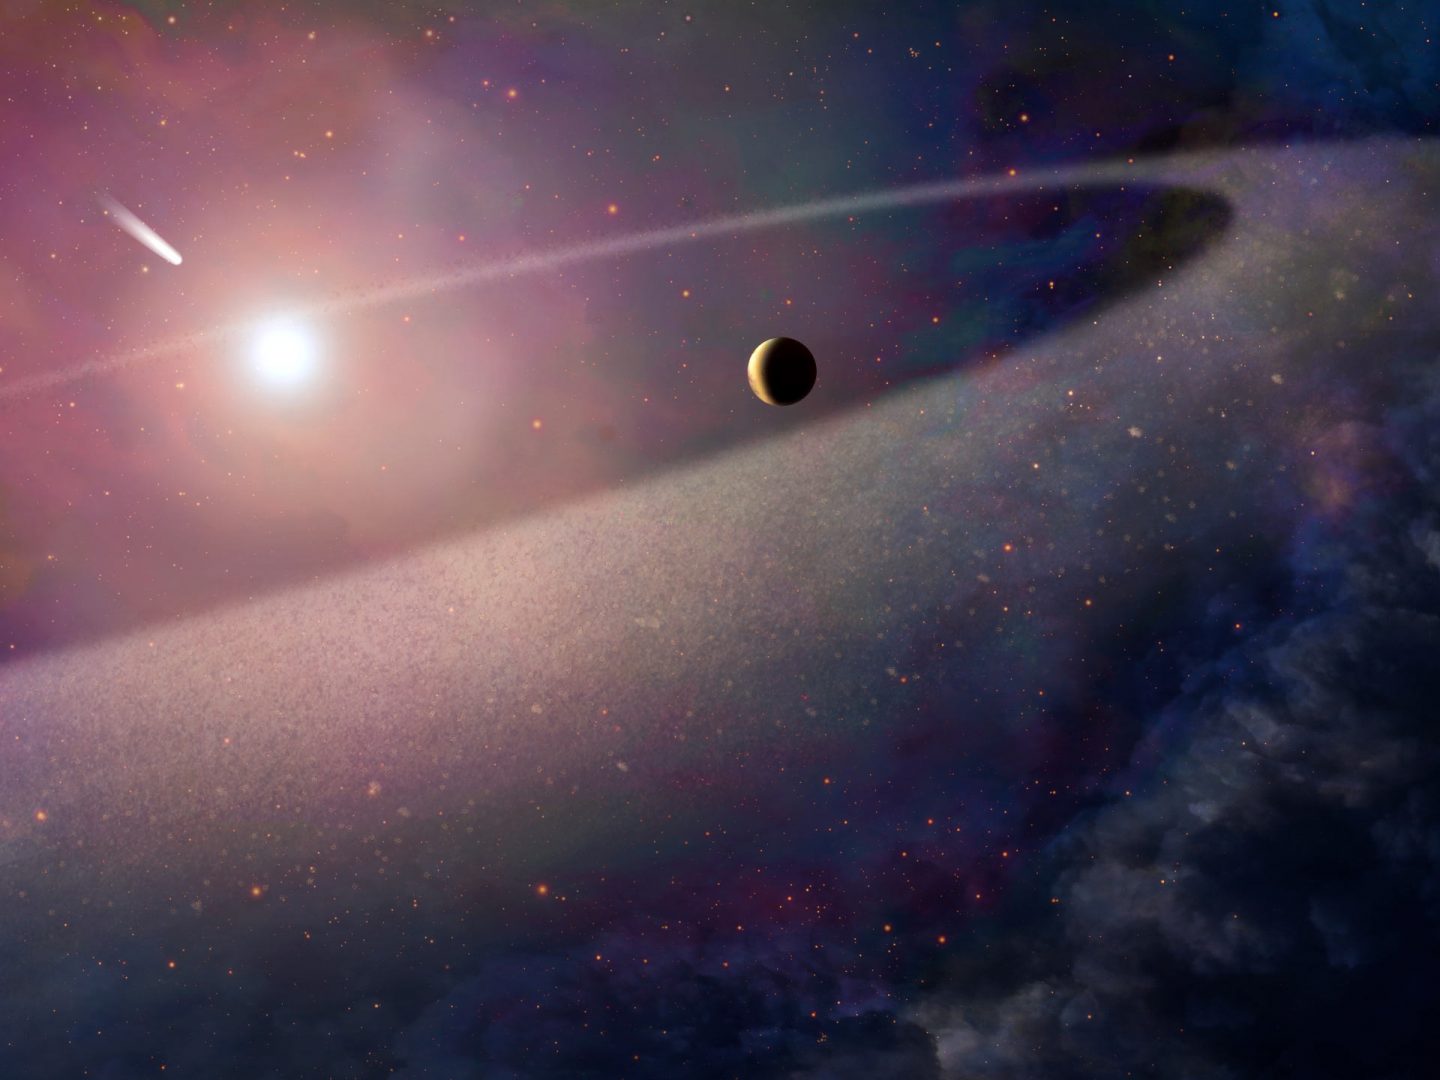 اكتشف علماء الفلك وجود حزام كويبر حول نجم في نظام شمسي بعيد